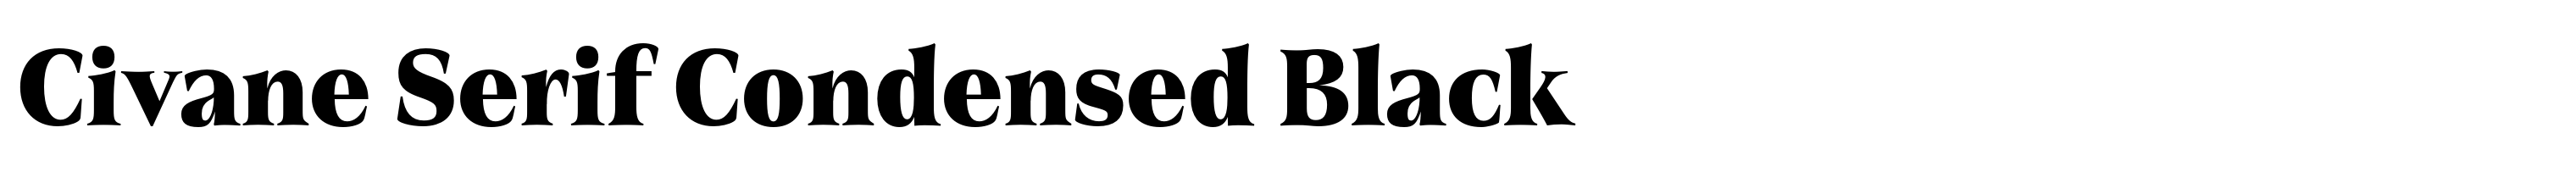 Civane Serif Condensed Black